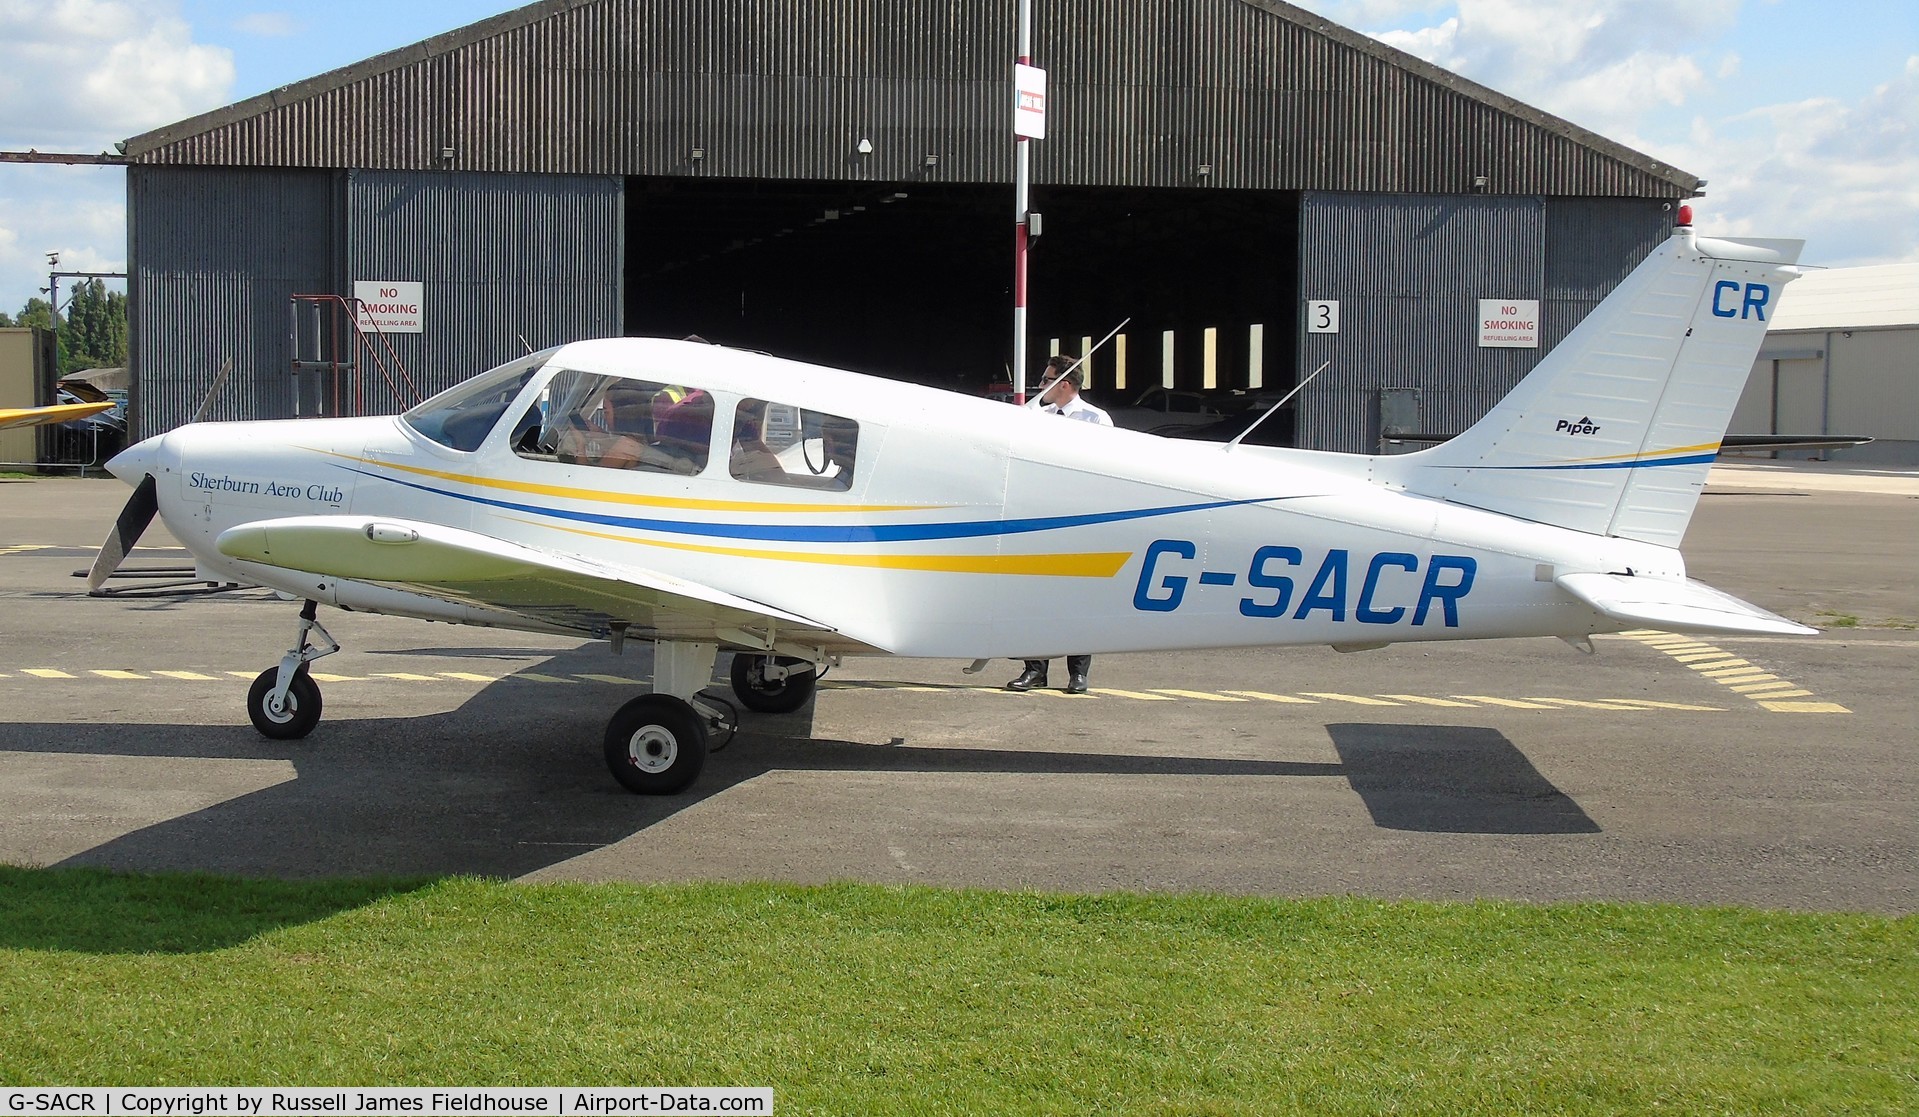 G-SACR, 1988 Piper PA-28-161 Cadet C/N 2841046, taken on 28/08/21 at sherburn